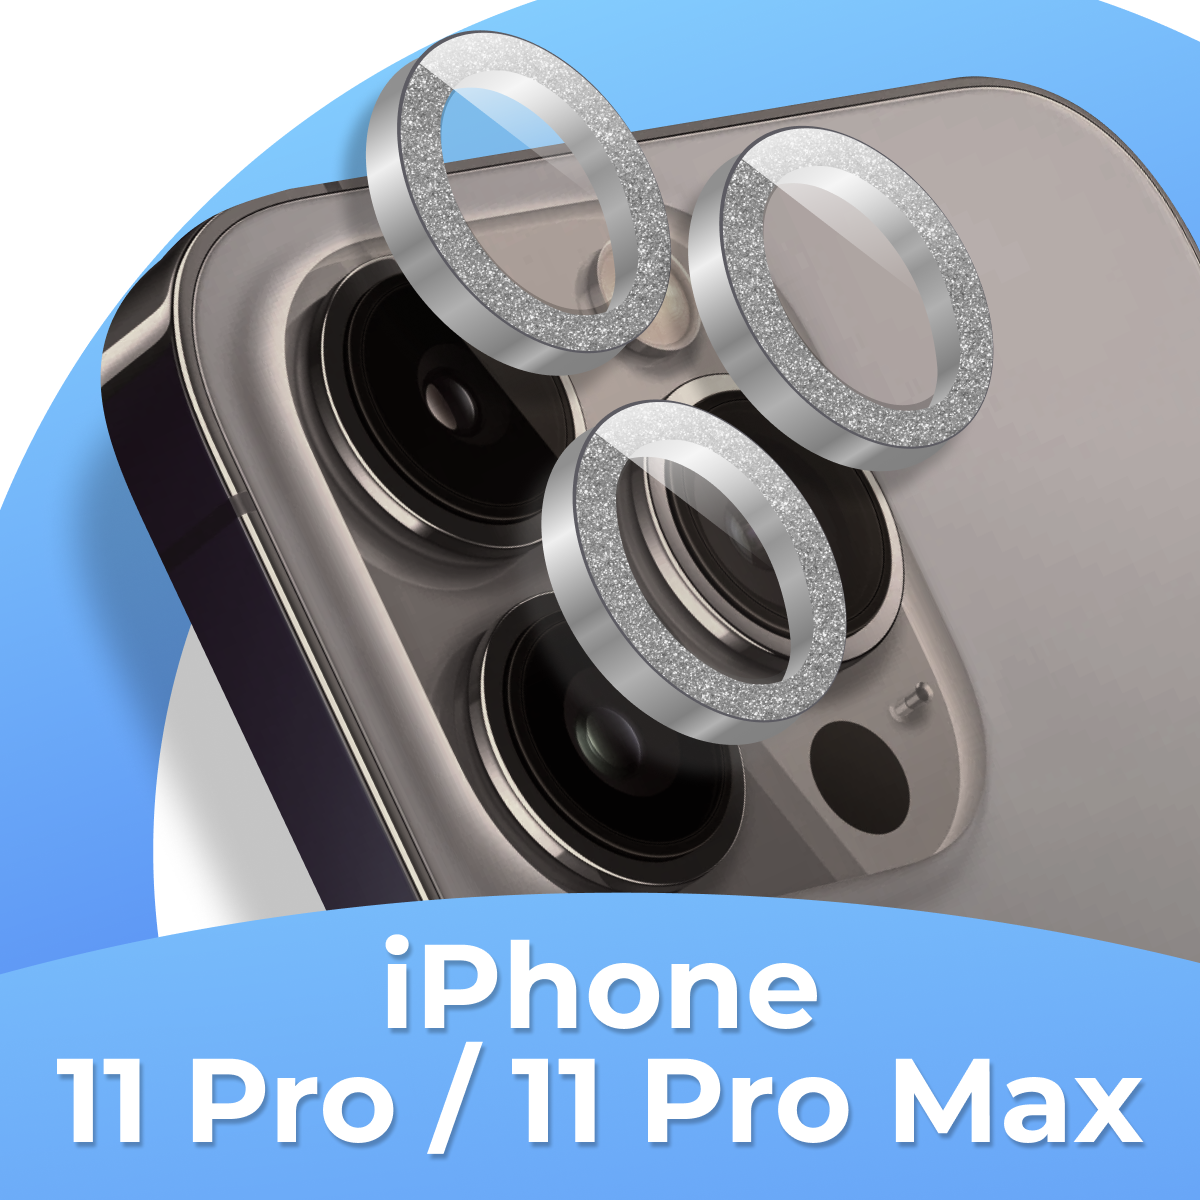 Комплект защитных стекол для камеры Apple iPhone 11 Pro, iPhone 11 Pro Max / Противоударные линзы на камеру Айфон 11 Про, Айфон 11 Про Макс с блестками / Серебро